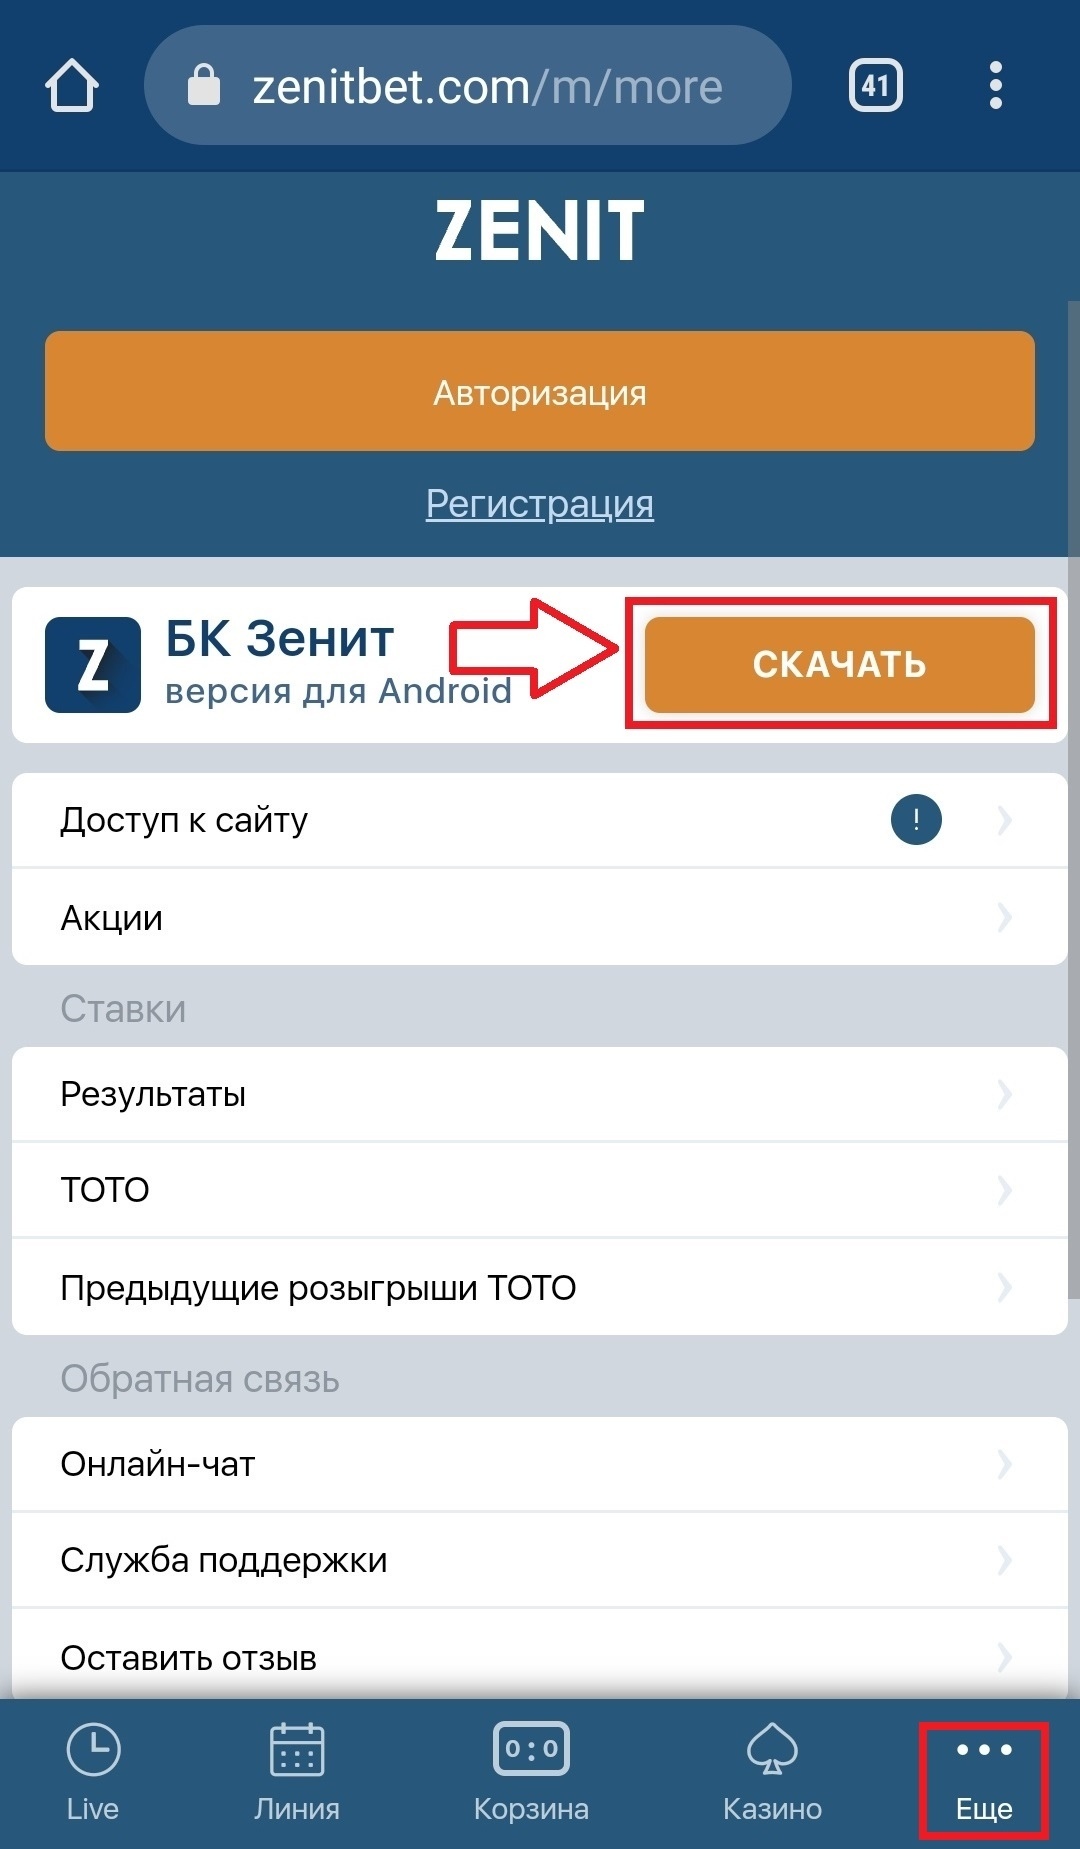 Меню «Еще» в мобильной версии сайта Zenit